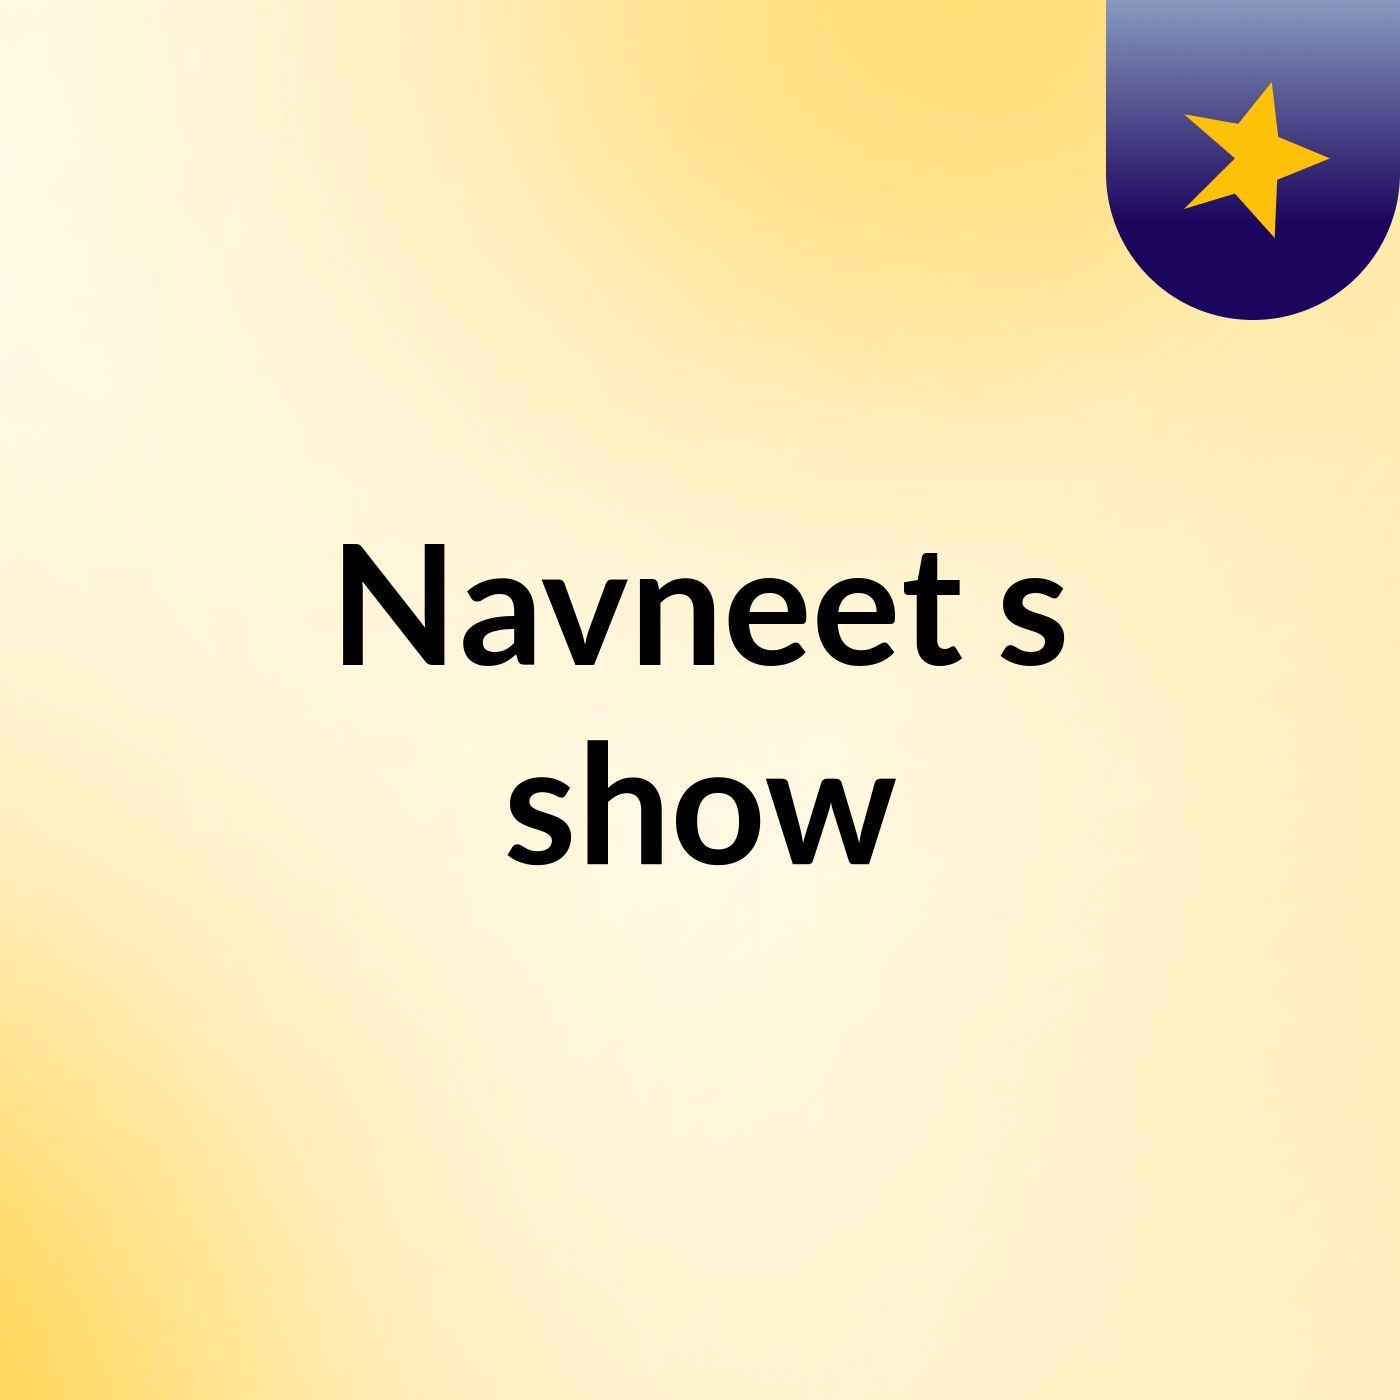 Navneet's show